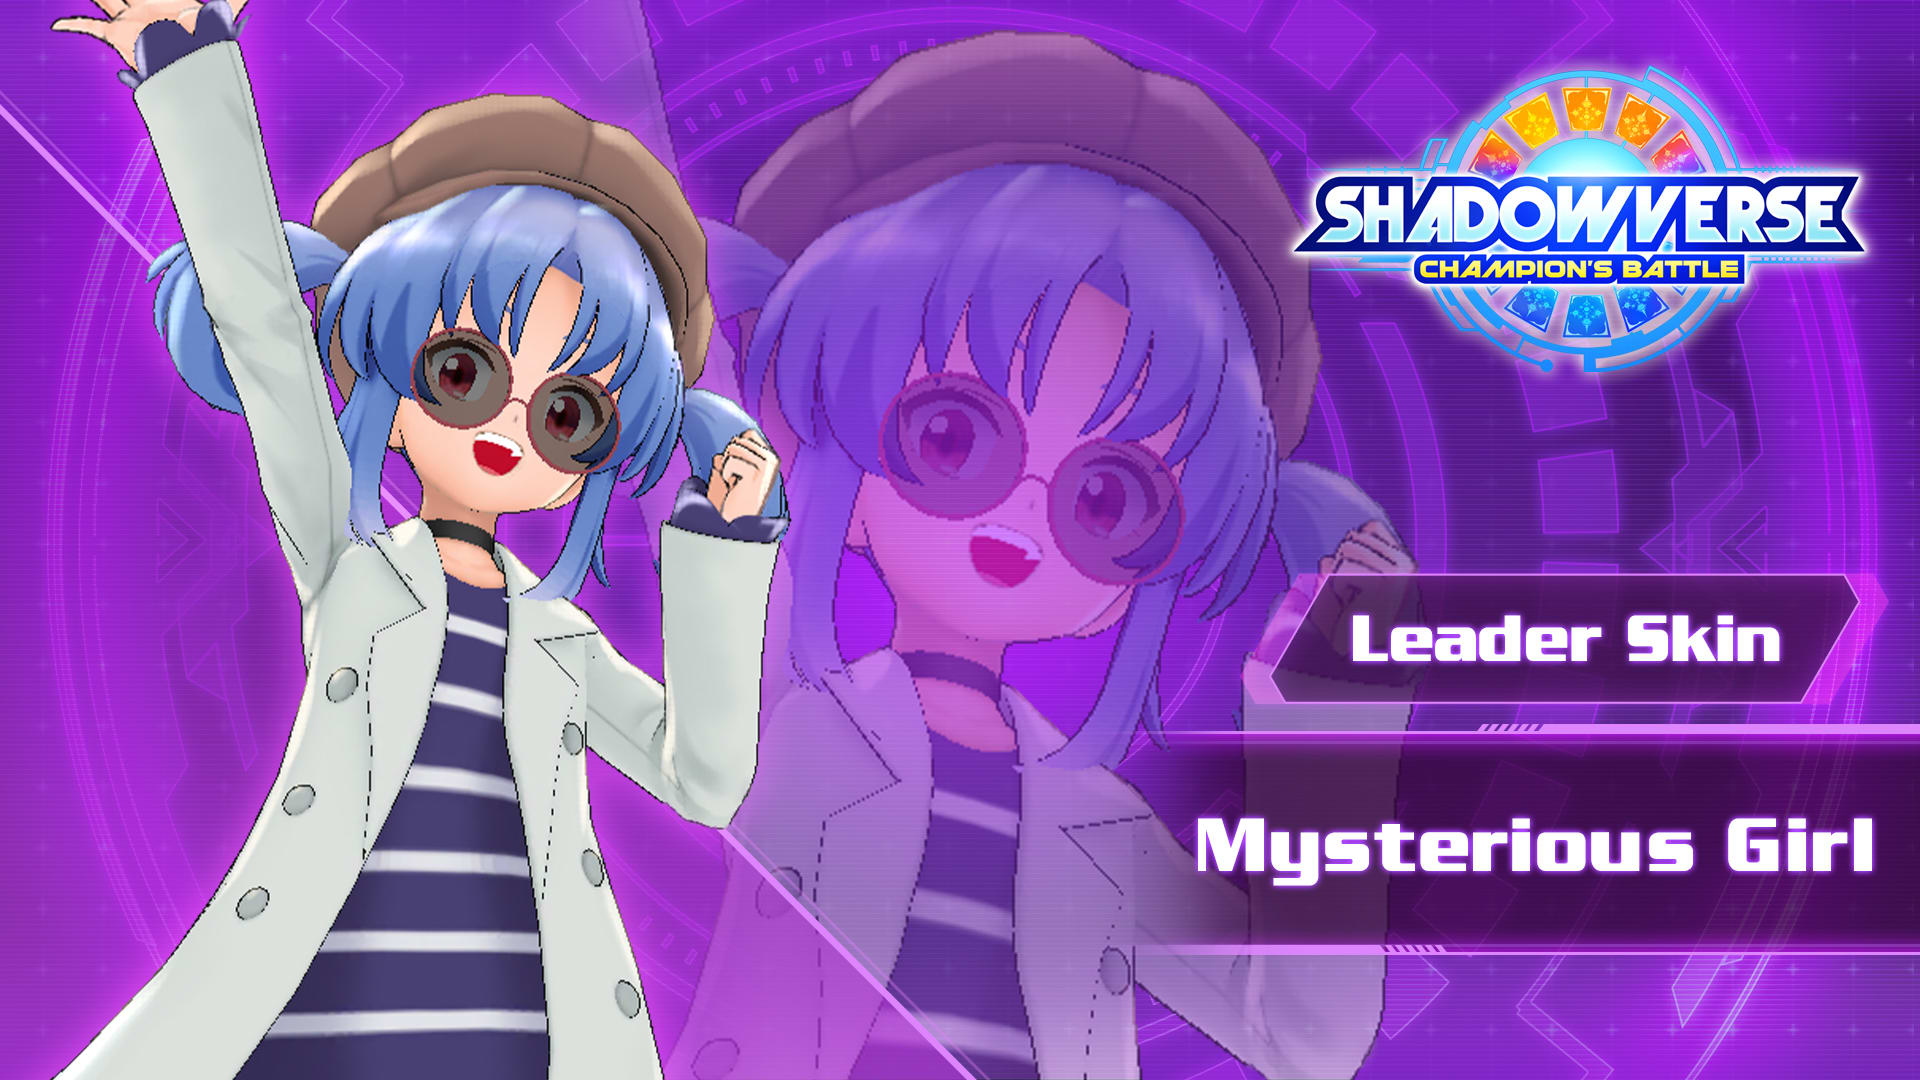 Leader Skin: "Mysterious Girl"